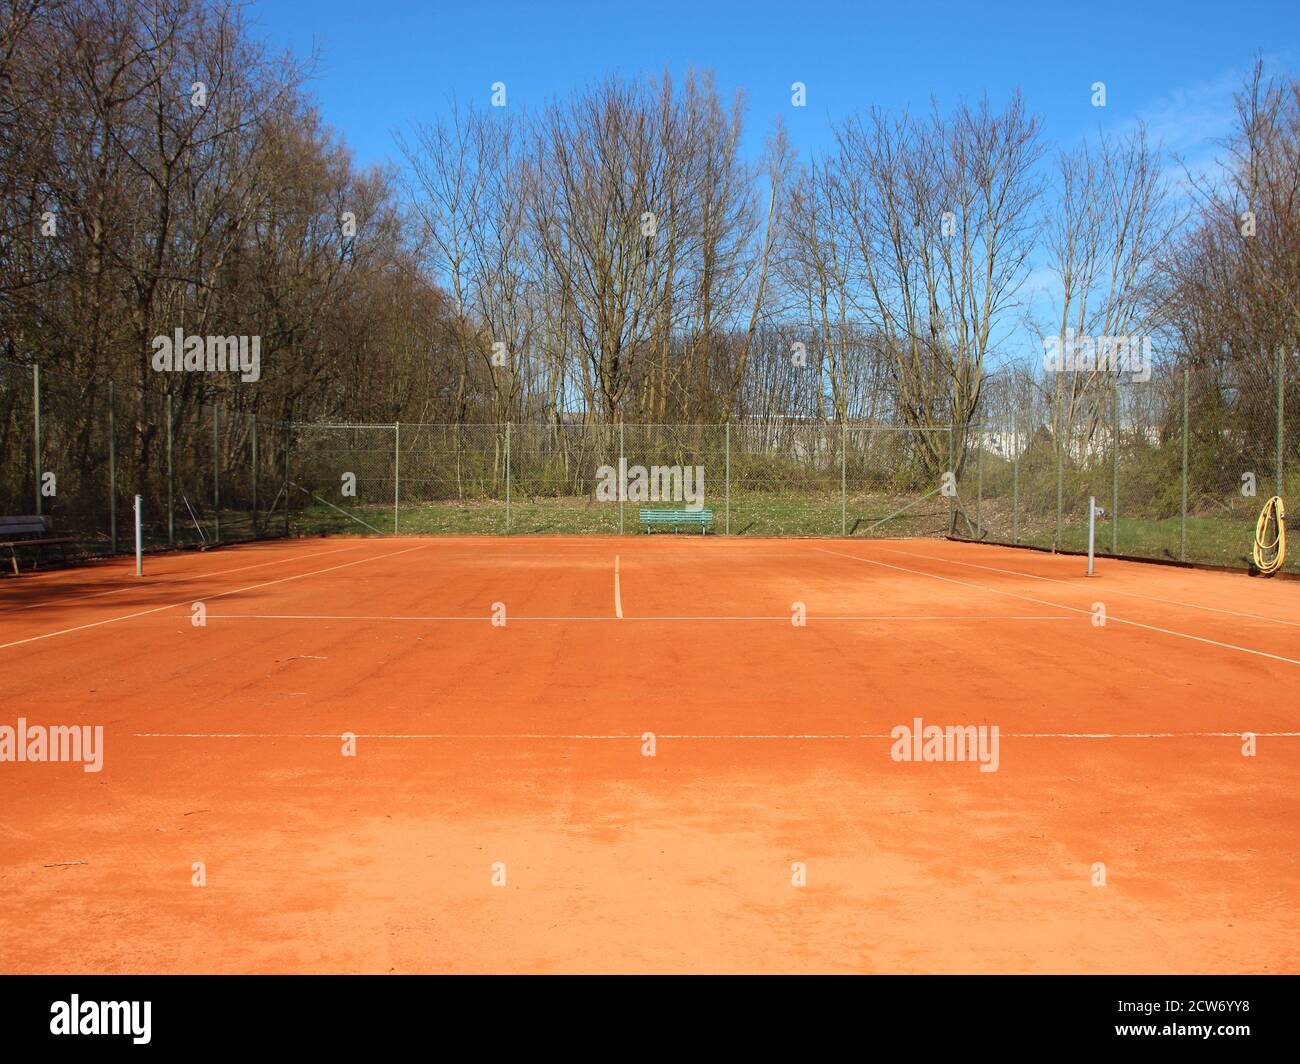 Un campo da tennis vuoto in terra rossa in estate. Non c'è rete, e il cortile è circondato da una recinzione con alberi sullo sfondo. Foto Stock